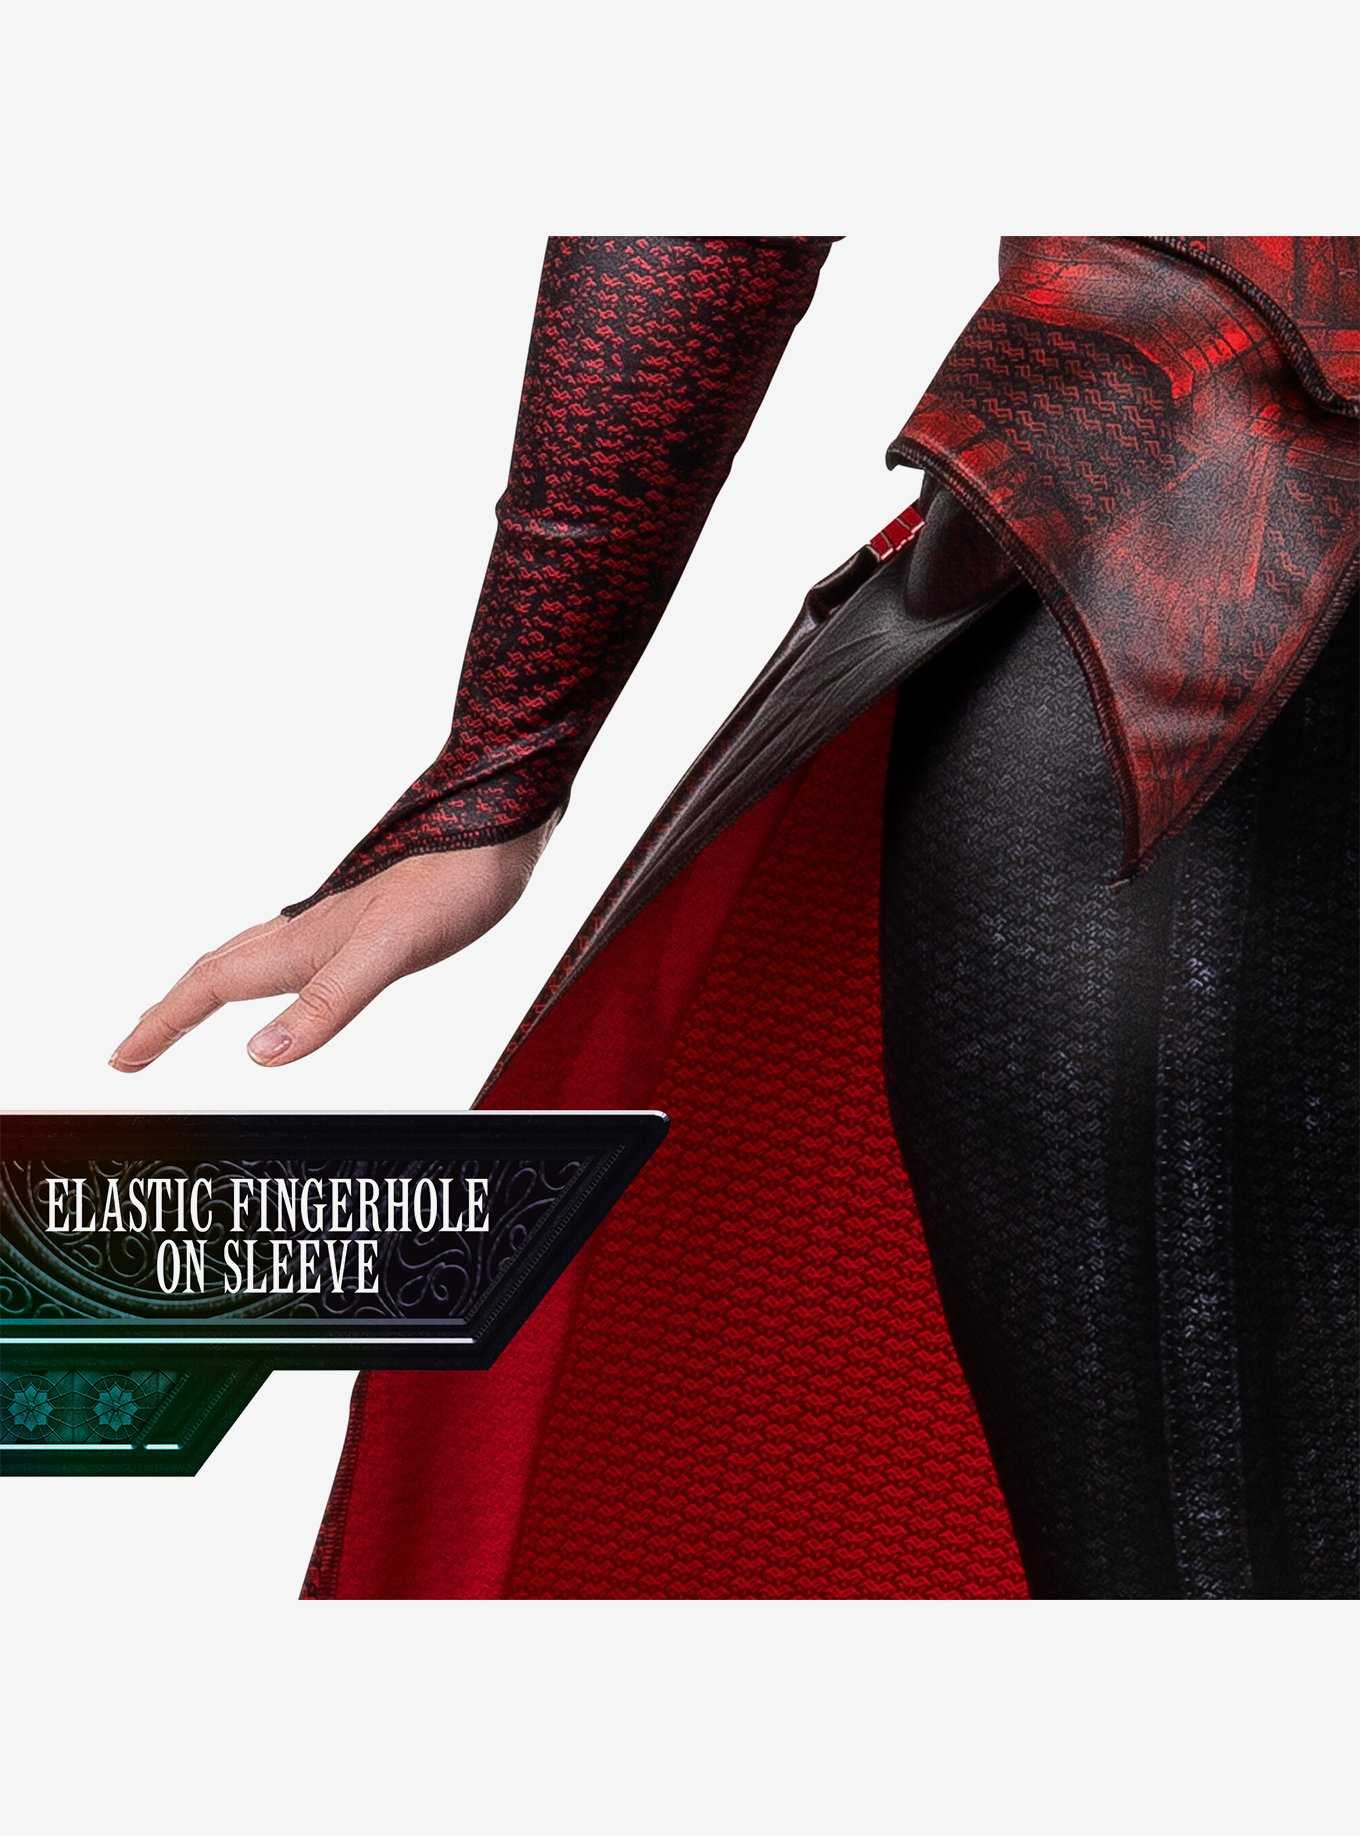 Marvel Scarlet Witch Adult Costume, , hi-res